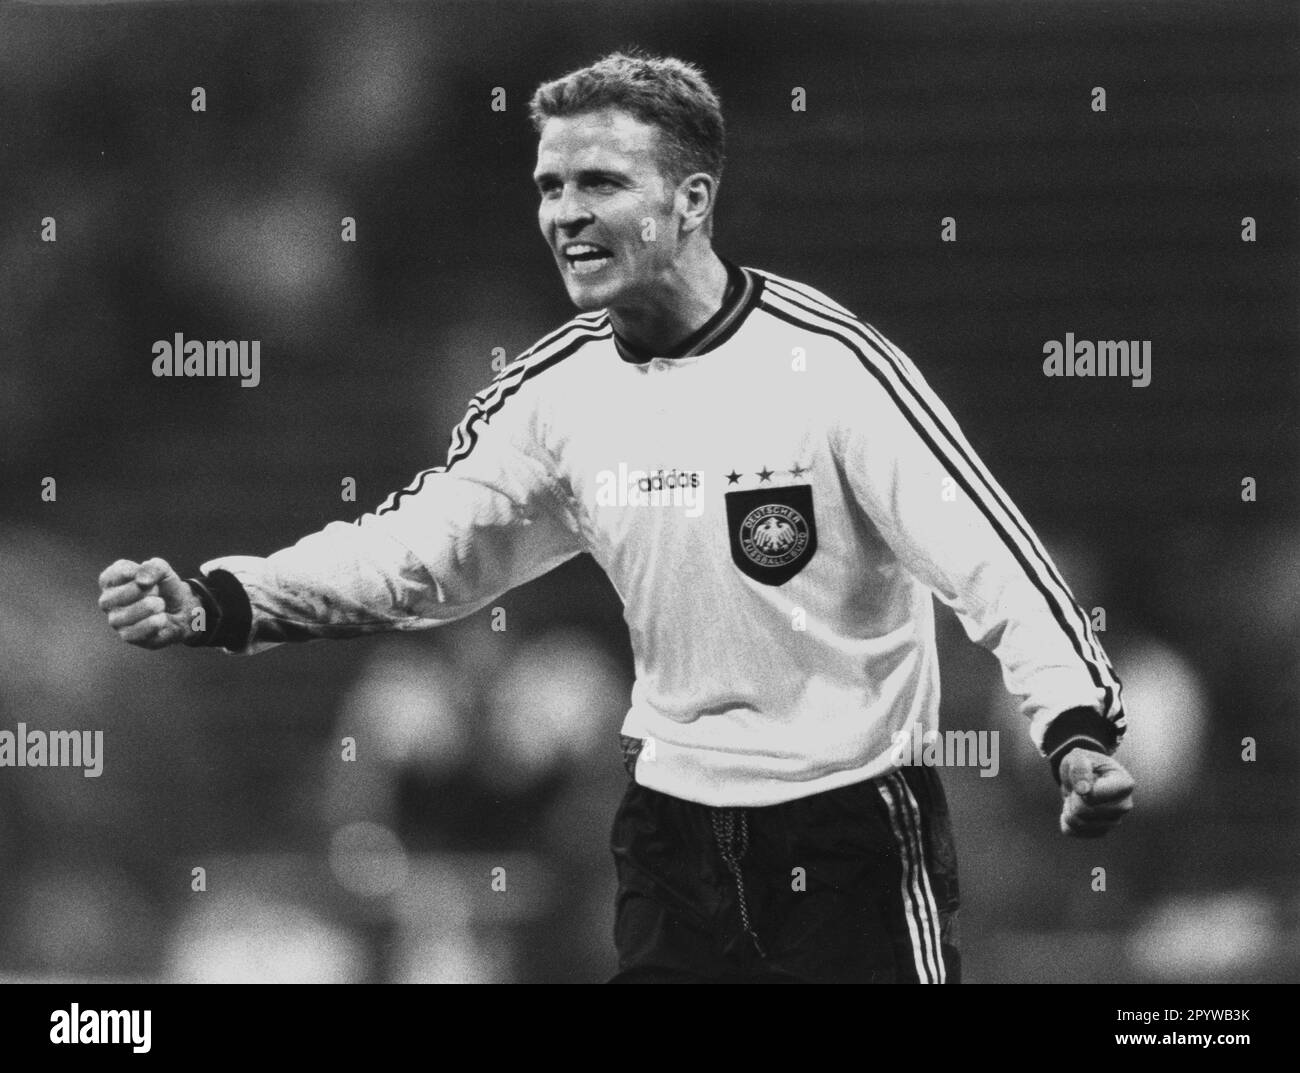 Oliver Bierhoff festeggia nella maglia nazionale su 27.03.1996 alla partita: Germania - Danimarca (2:0) a Monaco. [traduzione automatica] Foto Stock